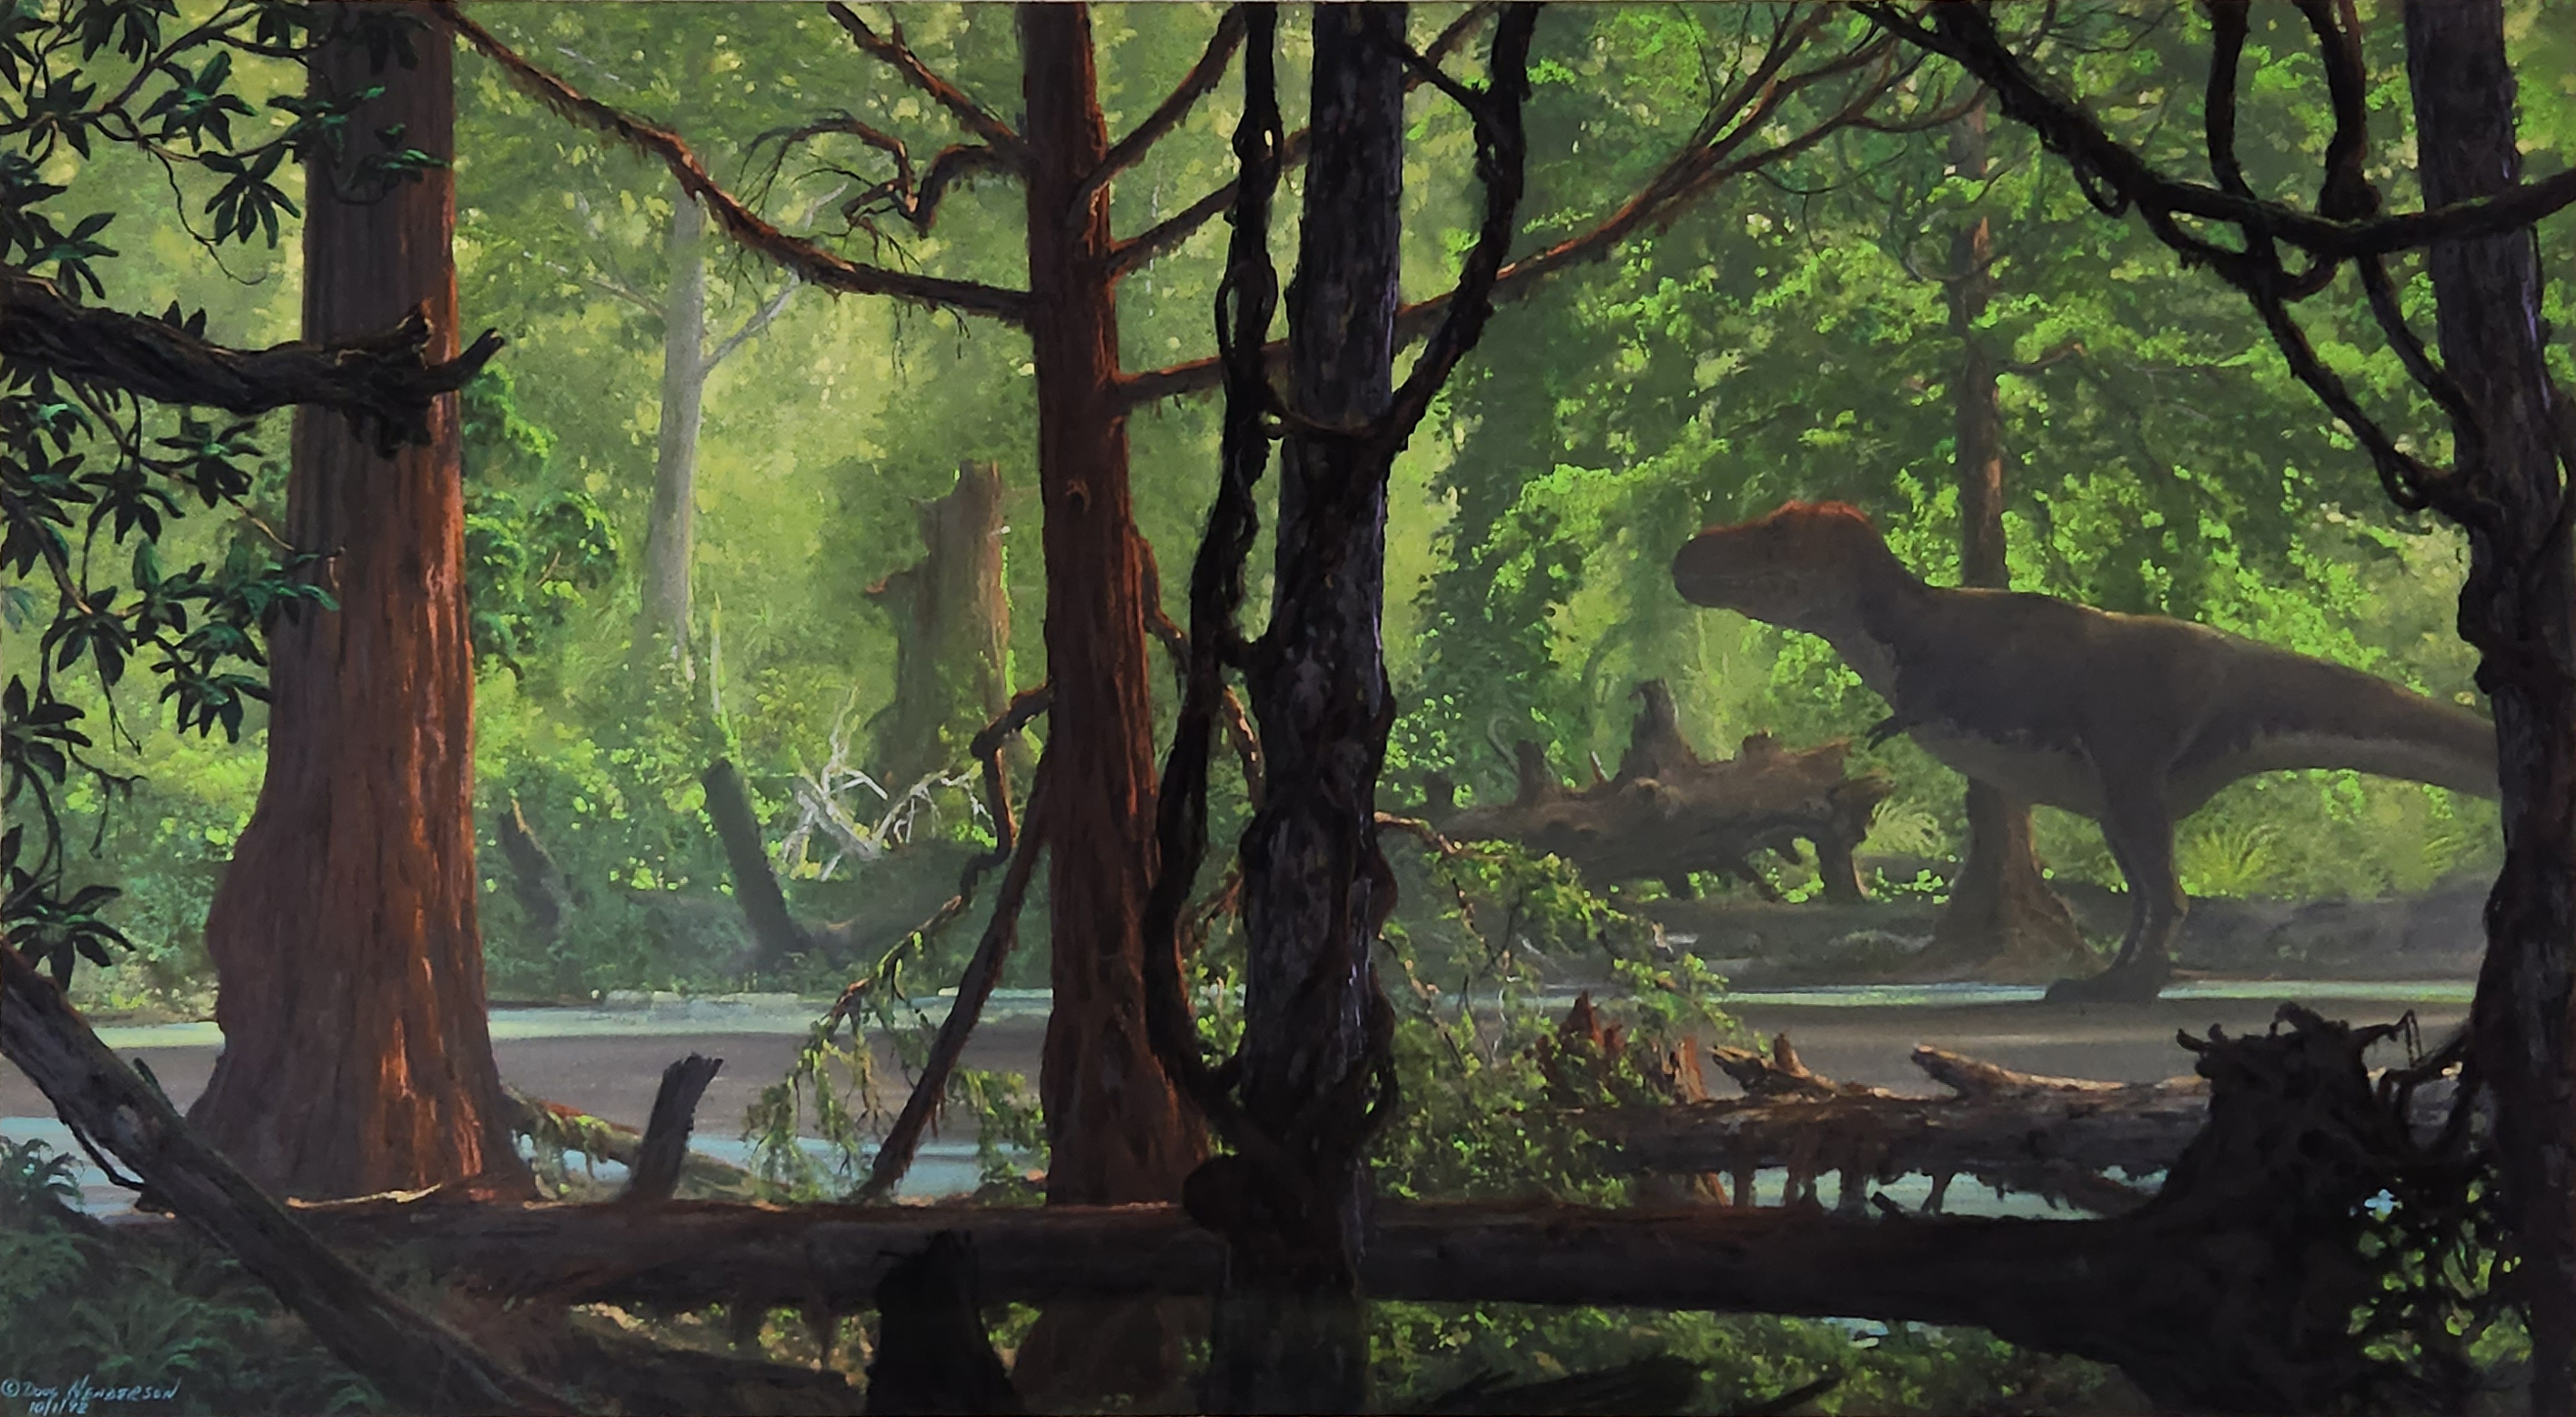 ダグラス・ヘンダーソン 「ティラノサウルス」 1992年 パステル・紙 36.8 × 68.6 ㎝ インディアナポリス子供博物館（ランツェンドルフ・コレクション） Courtesy of the Children’s Museum of Indianapolis (c) Douglas Henderson